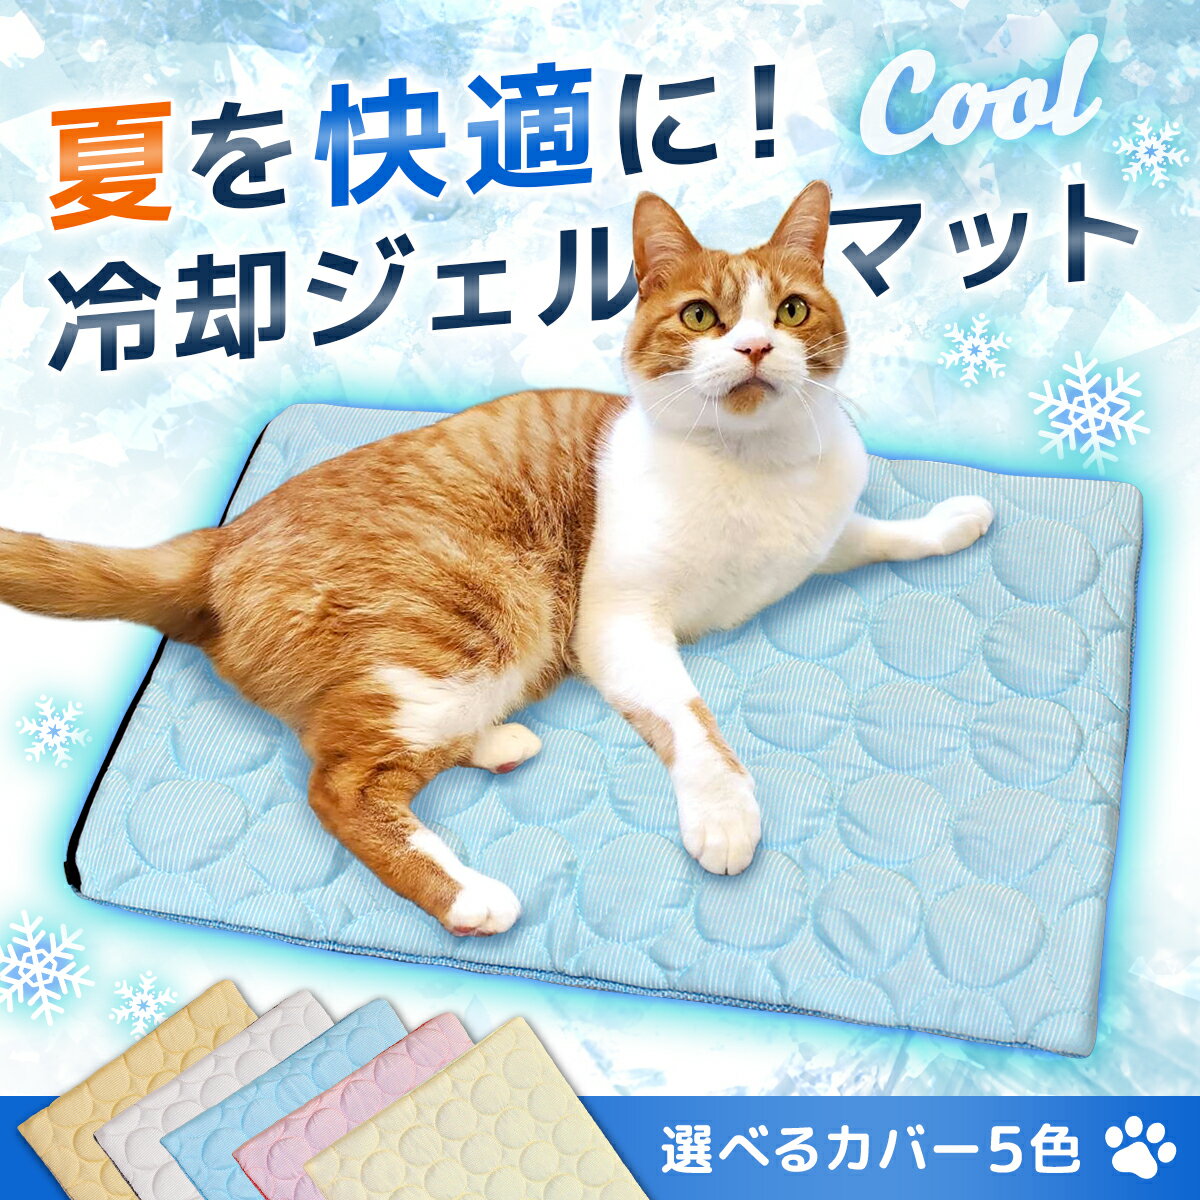 冷却ジェルマット カバー セット ひんやり ペット 犬 猫 冷感 冷却 ジェルマット 2WAY 夏用 クール 暑さ対策 洗える マット Mサイズ 3